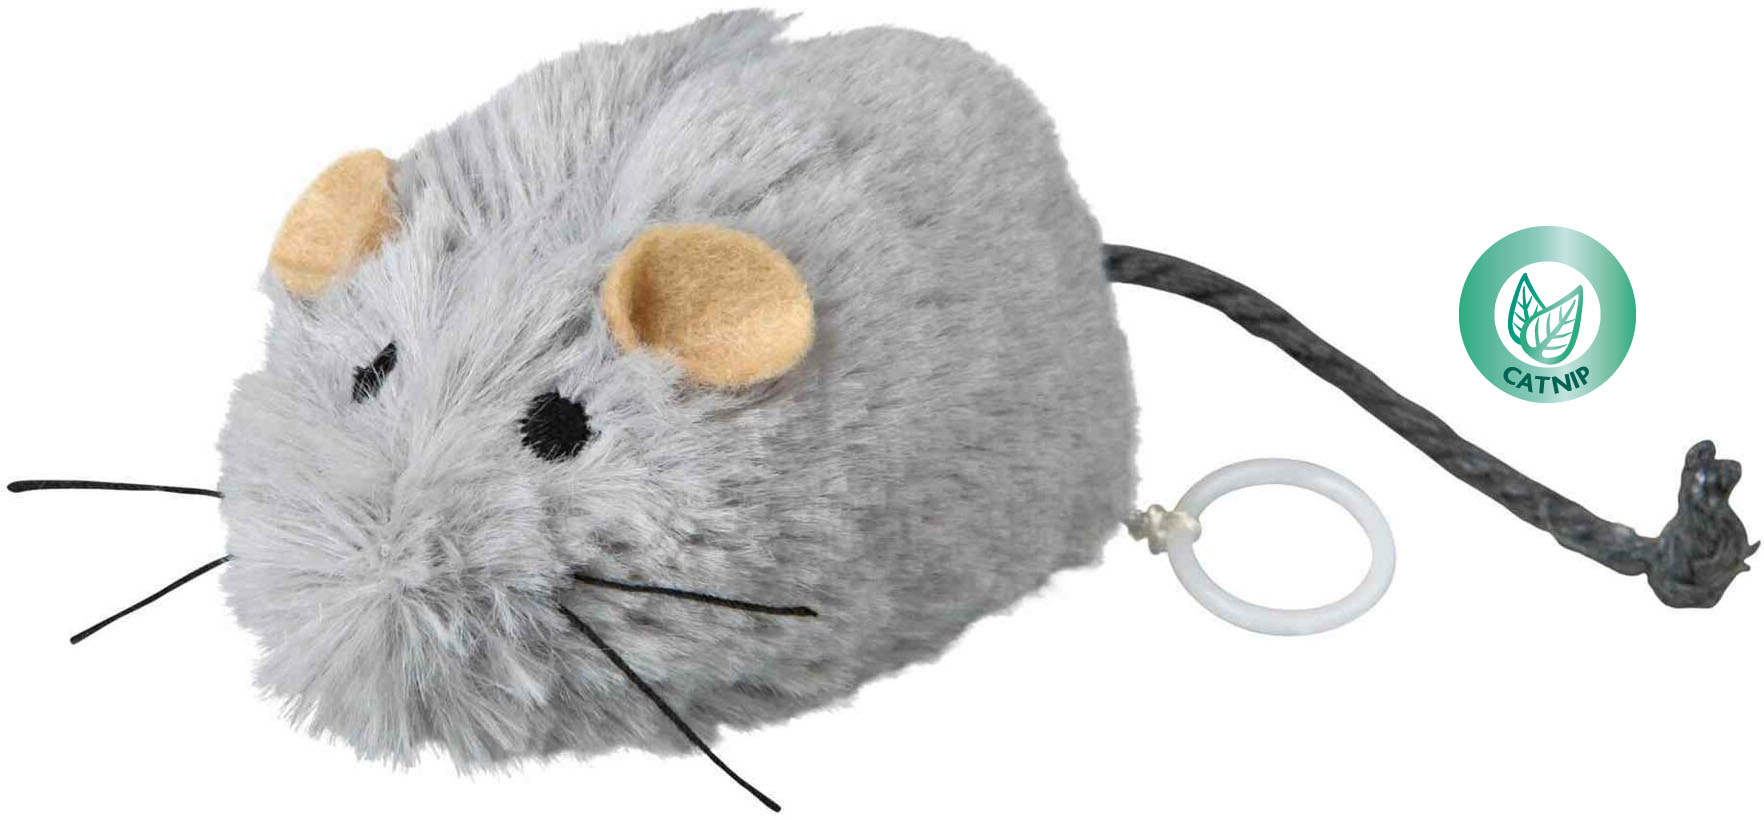 Myška všudybylka natahovací 8 cm - hračka pro kočky